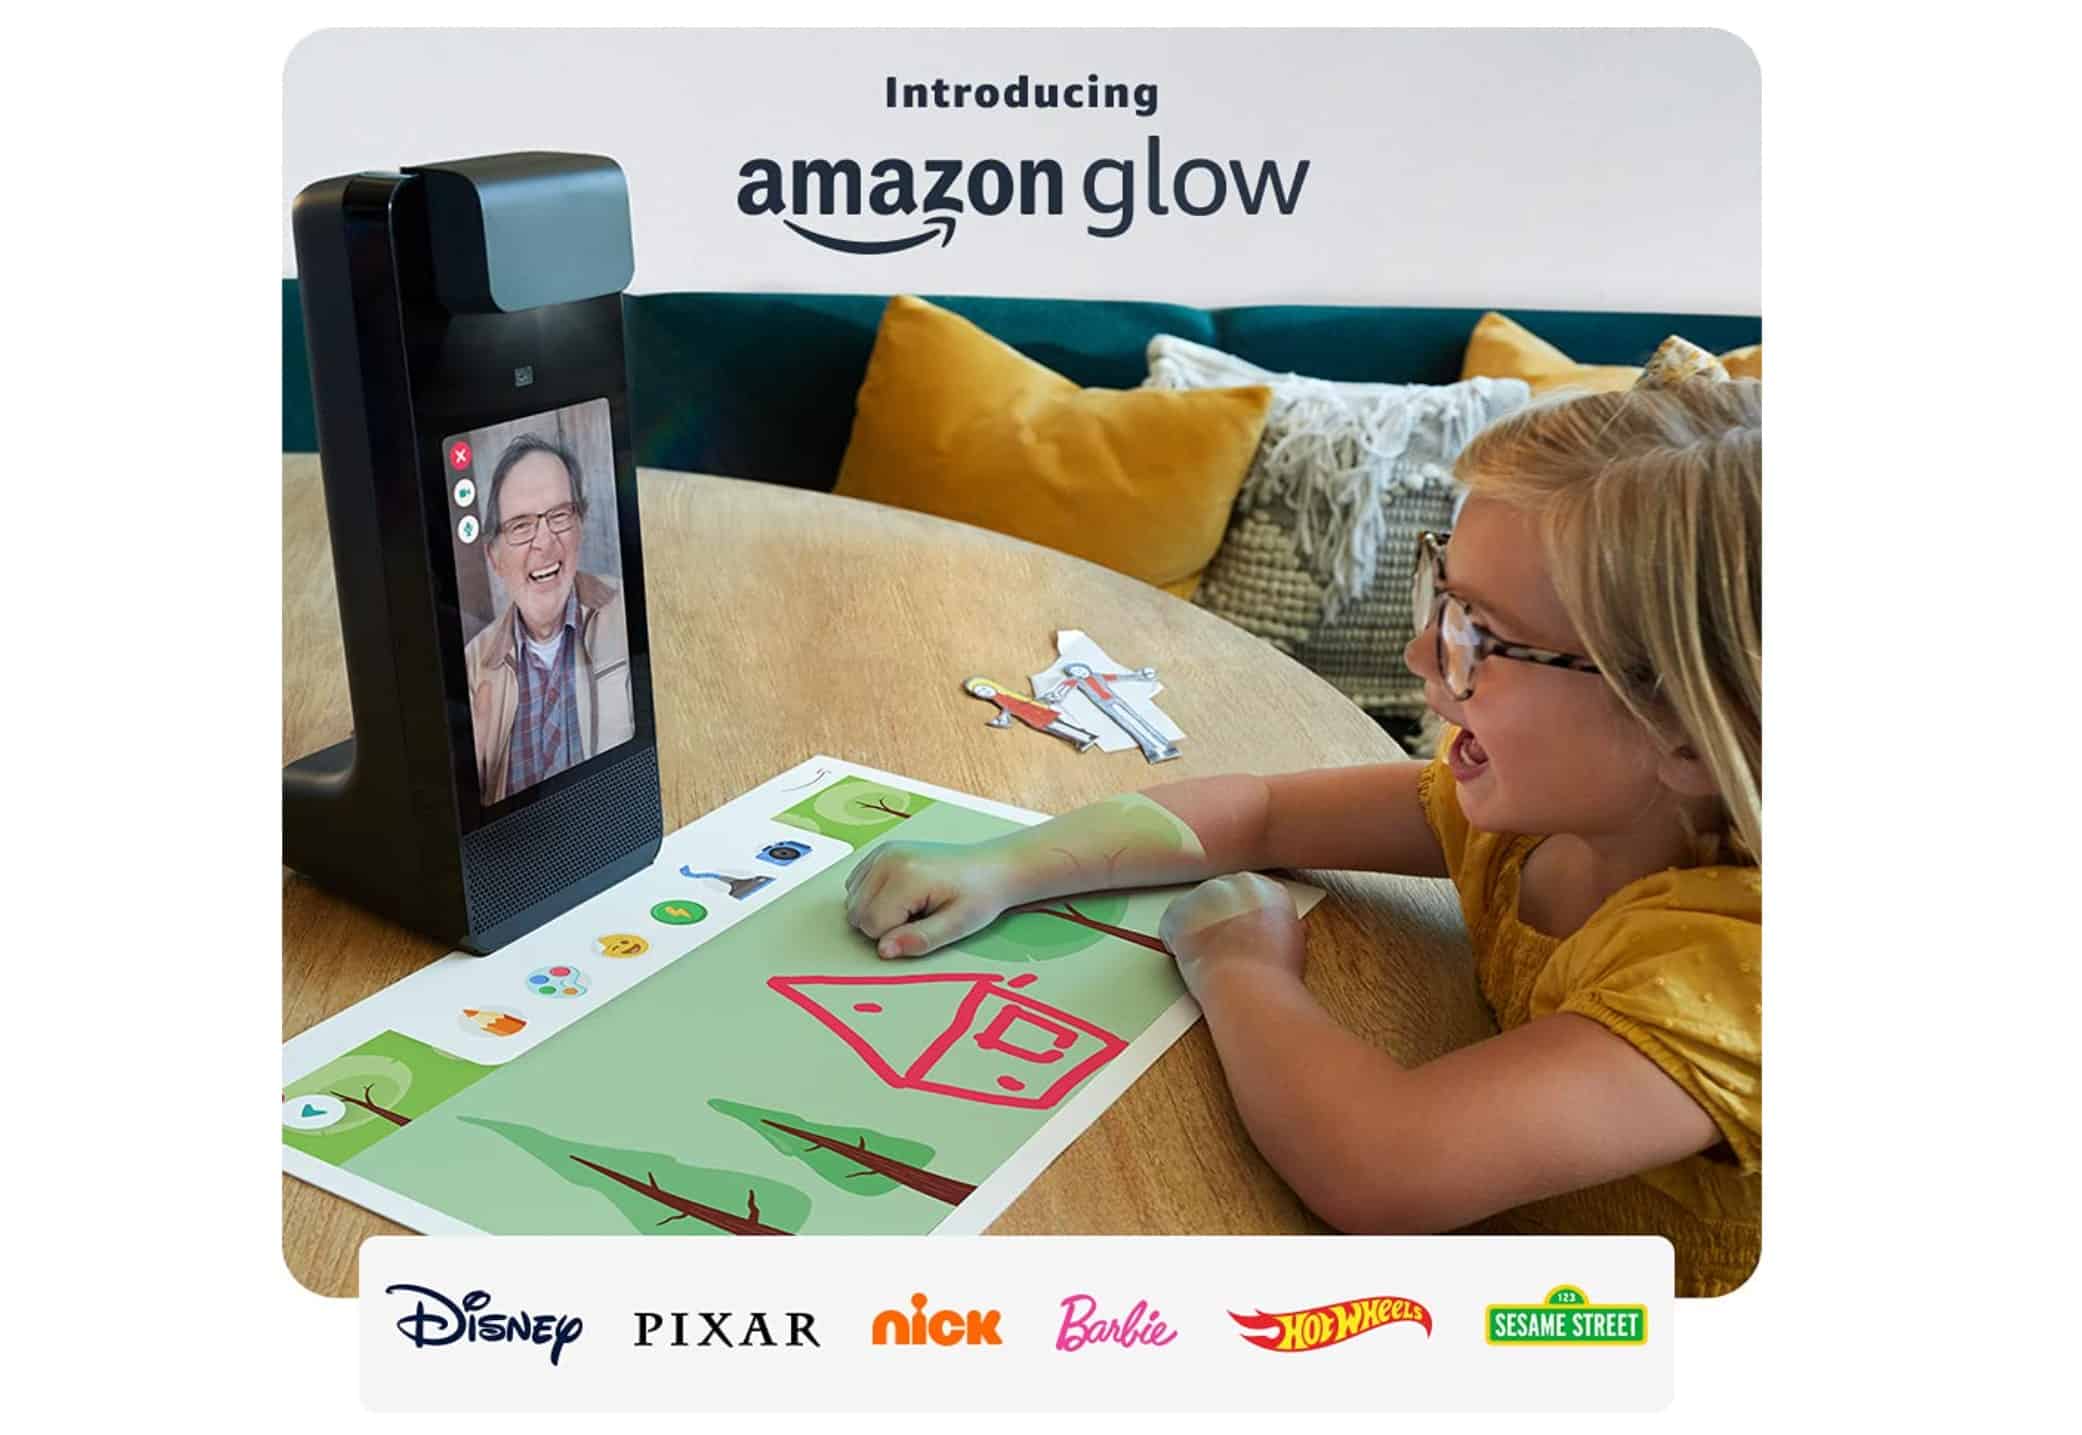 Amazon Glow kids device